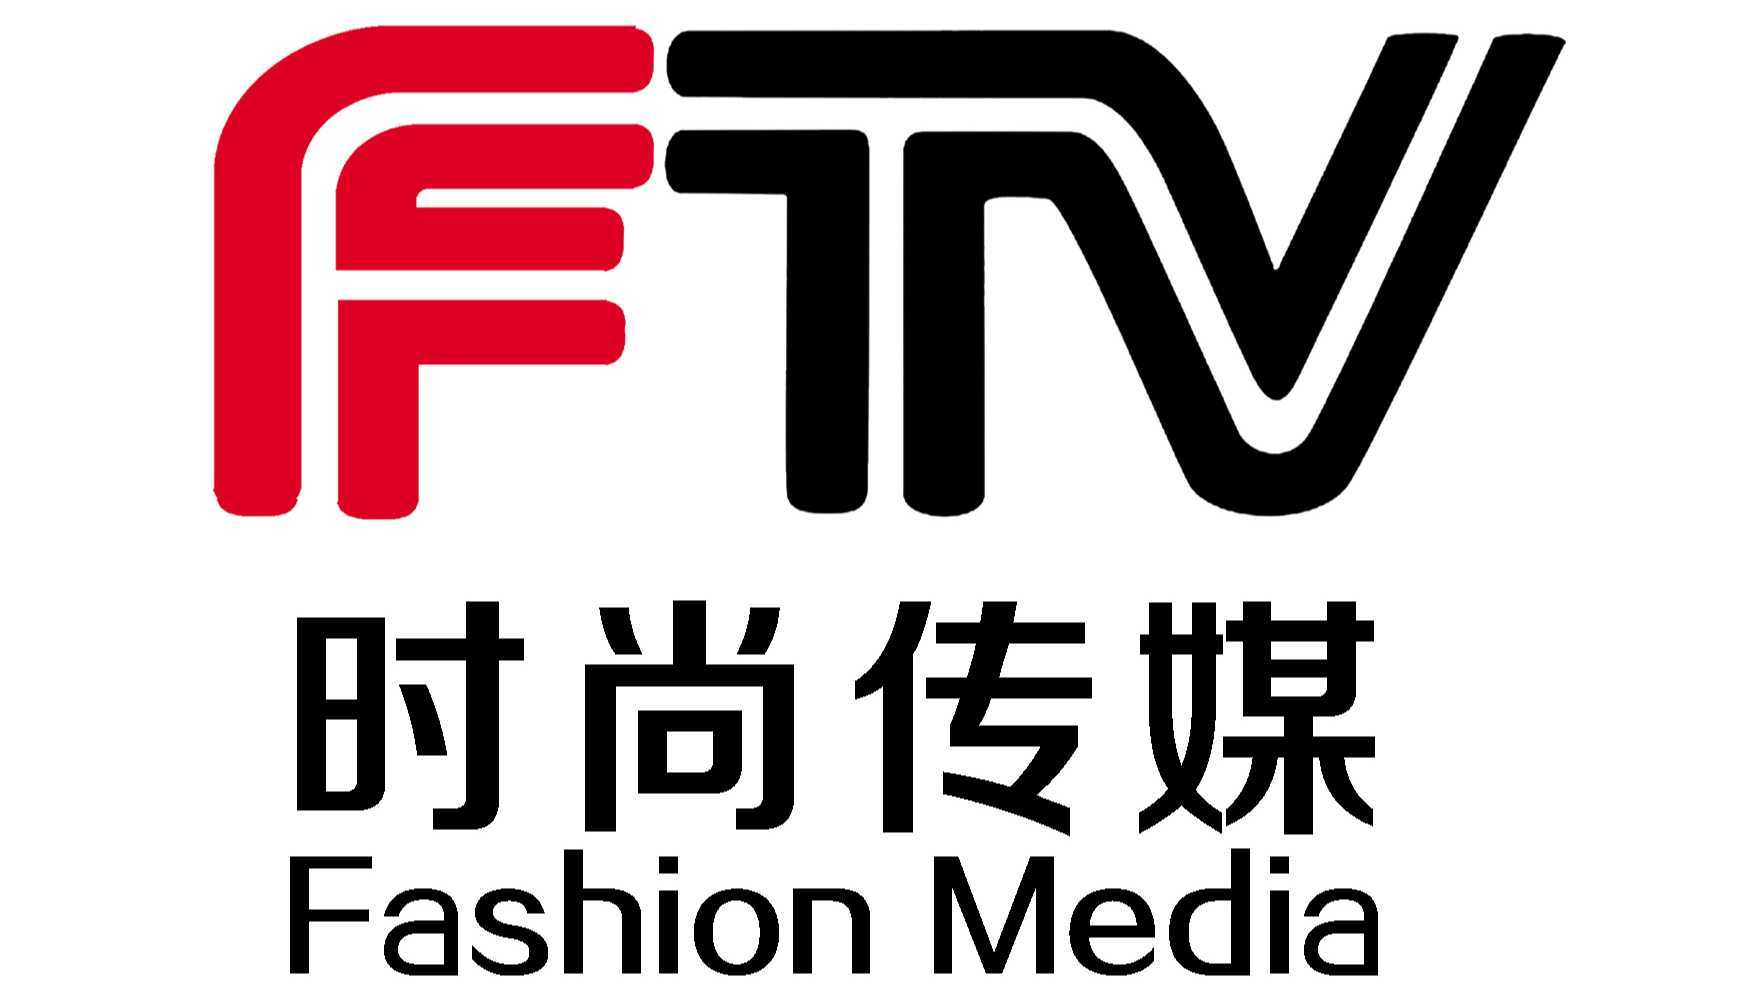 FTV引领时尚传媒新风暴